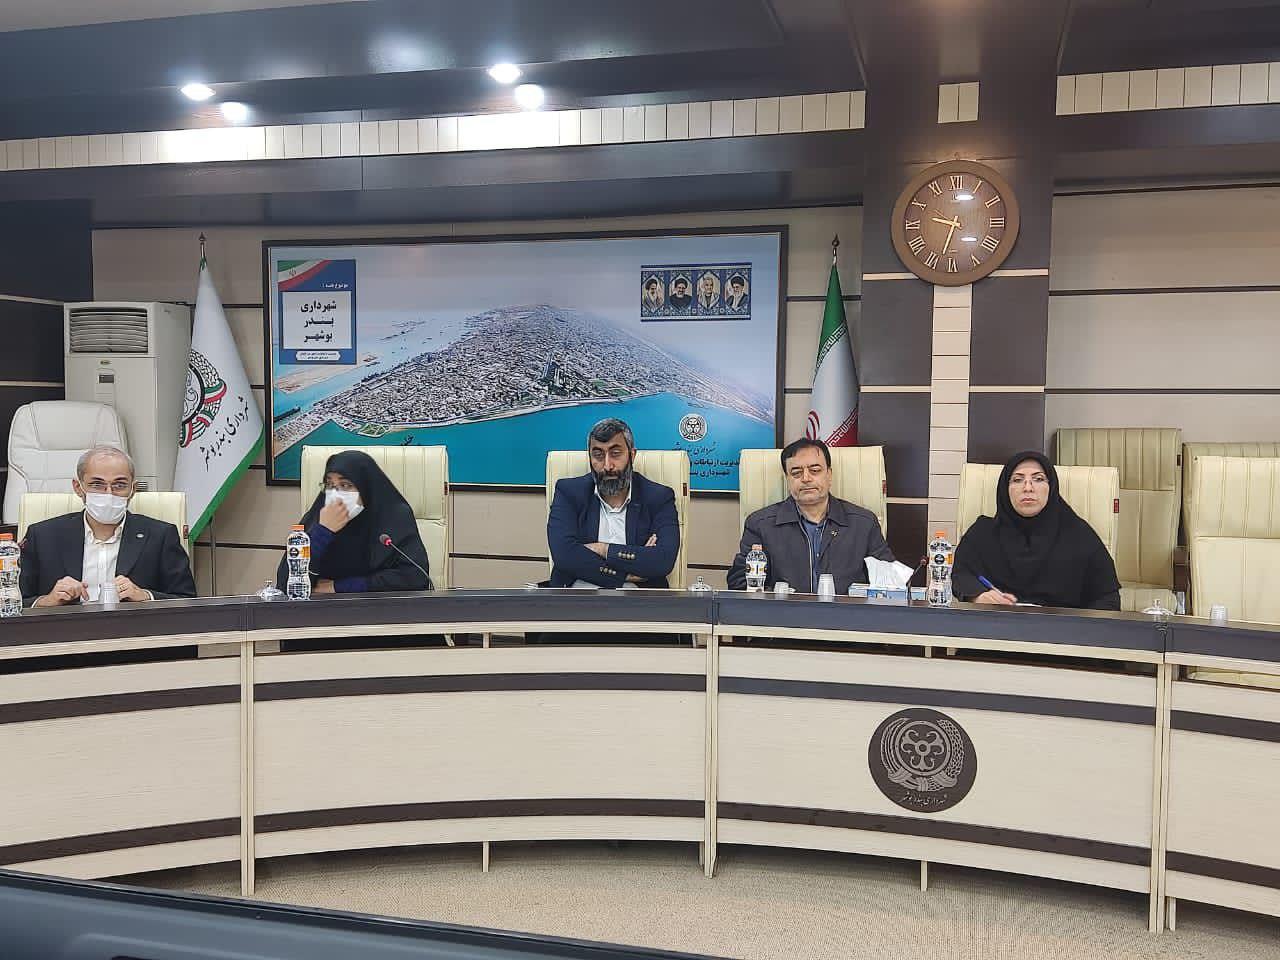 تاکید شهردار بوشهر بر حل اساسی مشکلات شهری با رویکرد علمی پژوهشی